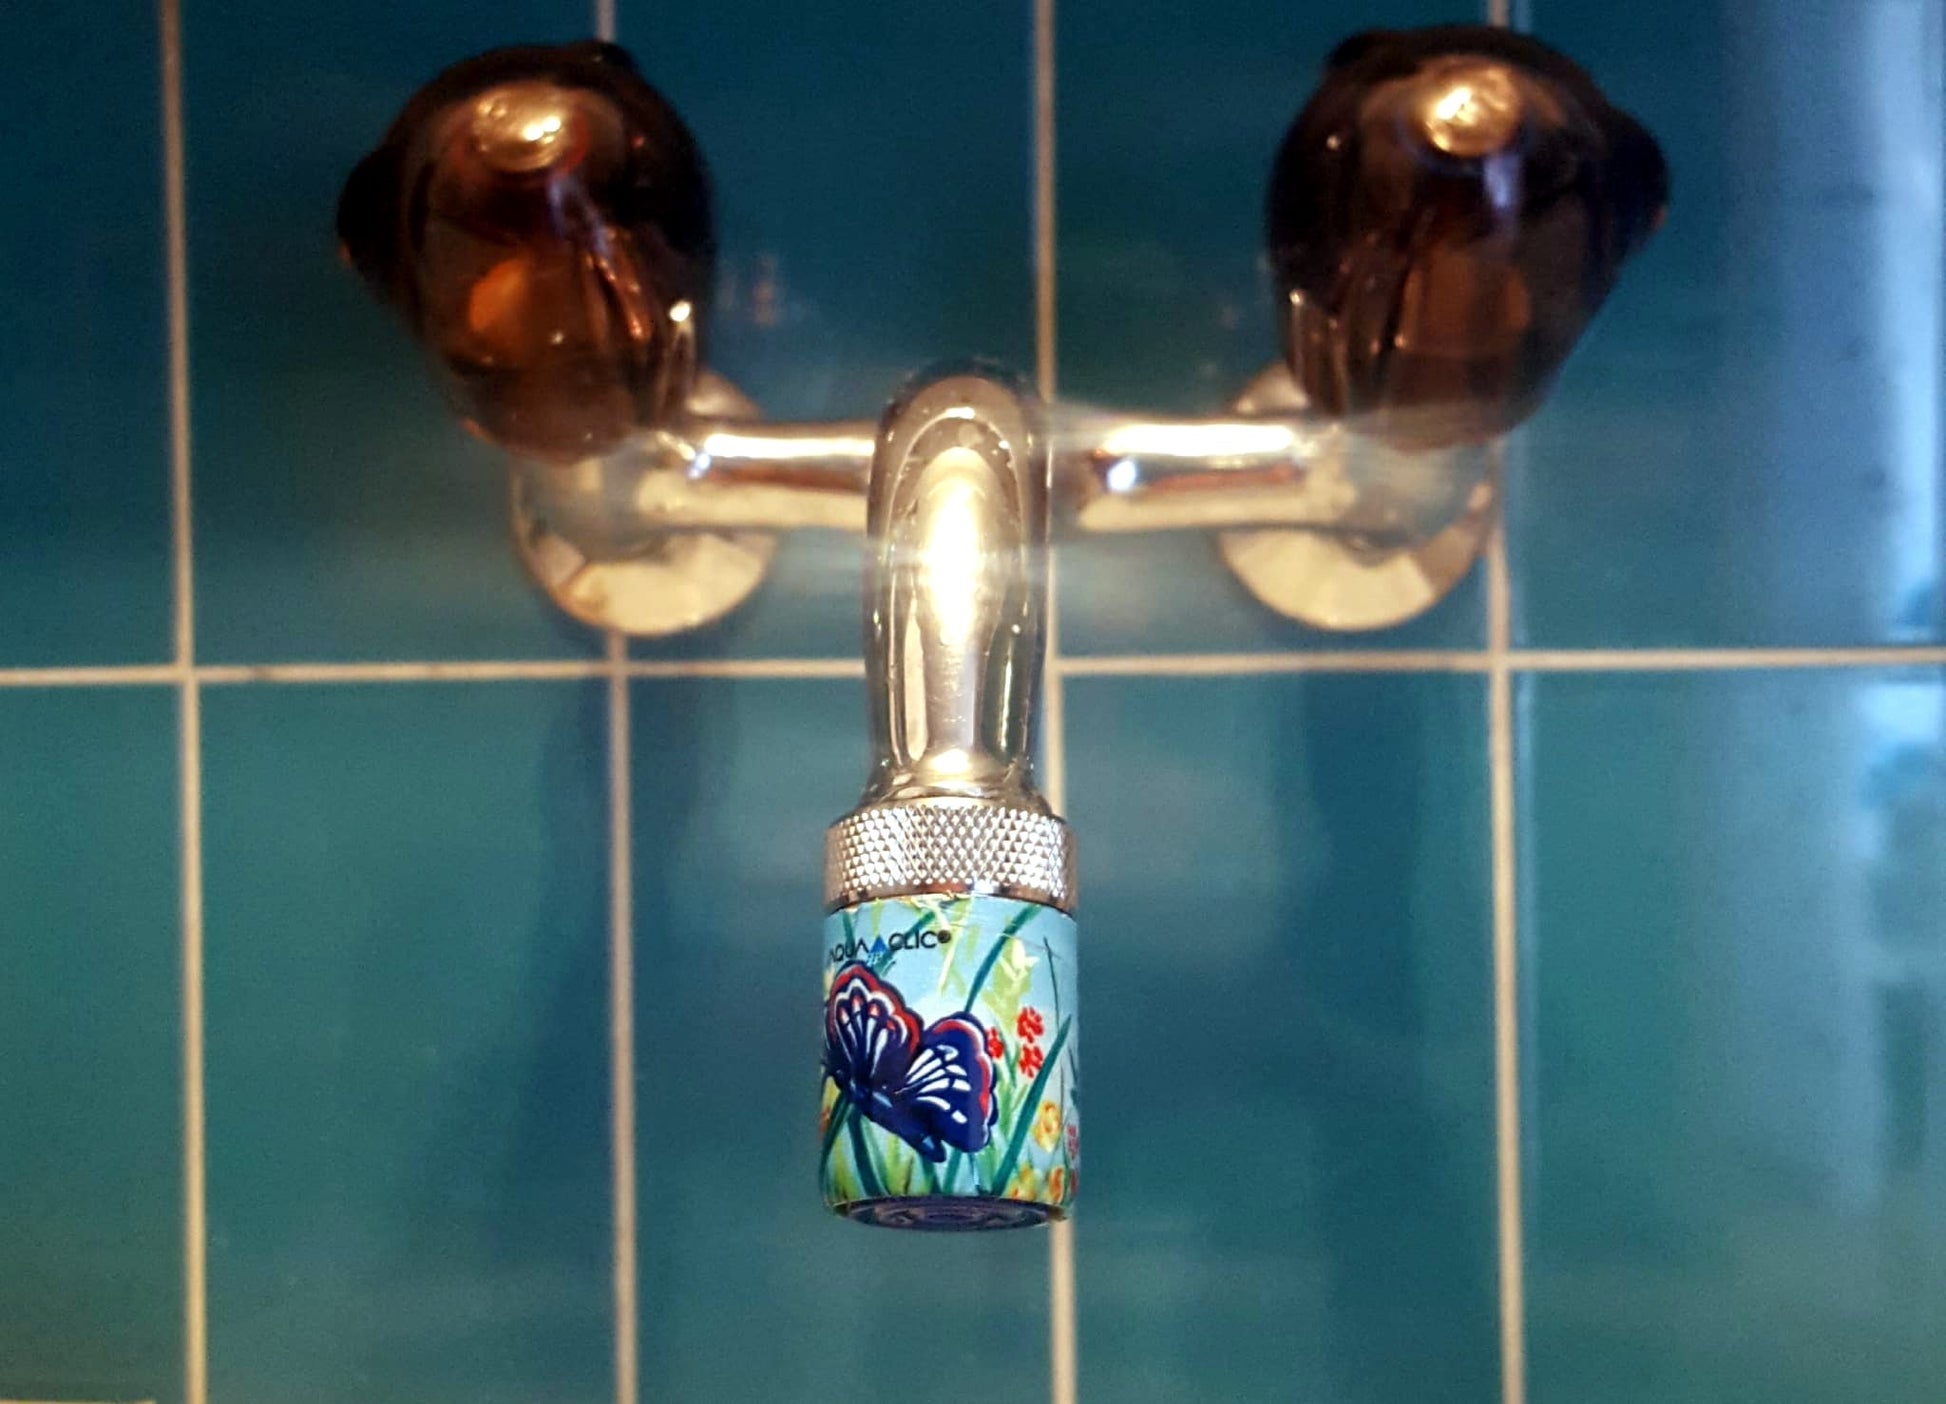 AquaClic-Wassersparer am Hahn mit  Papillons-Design vermindert Wasserverbrauch und Kosten